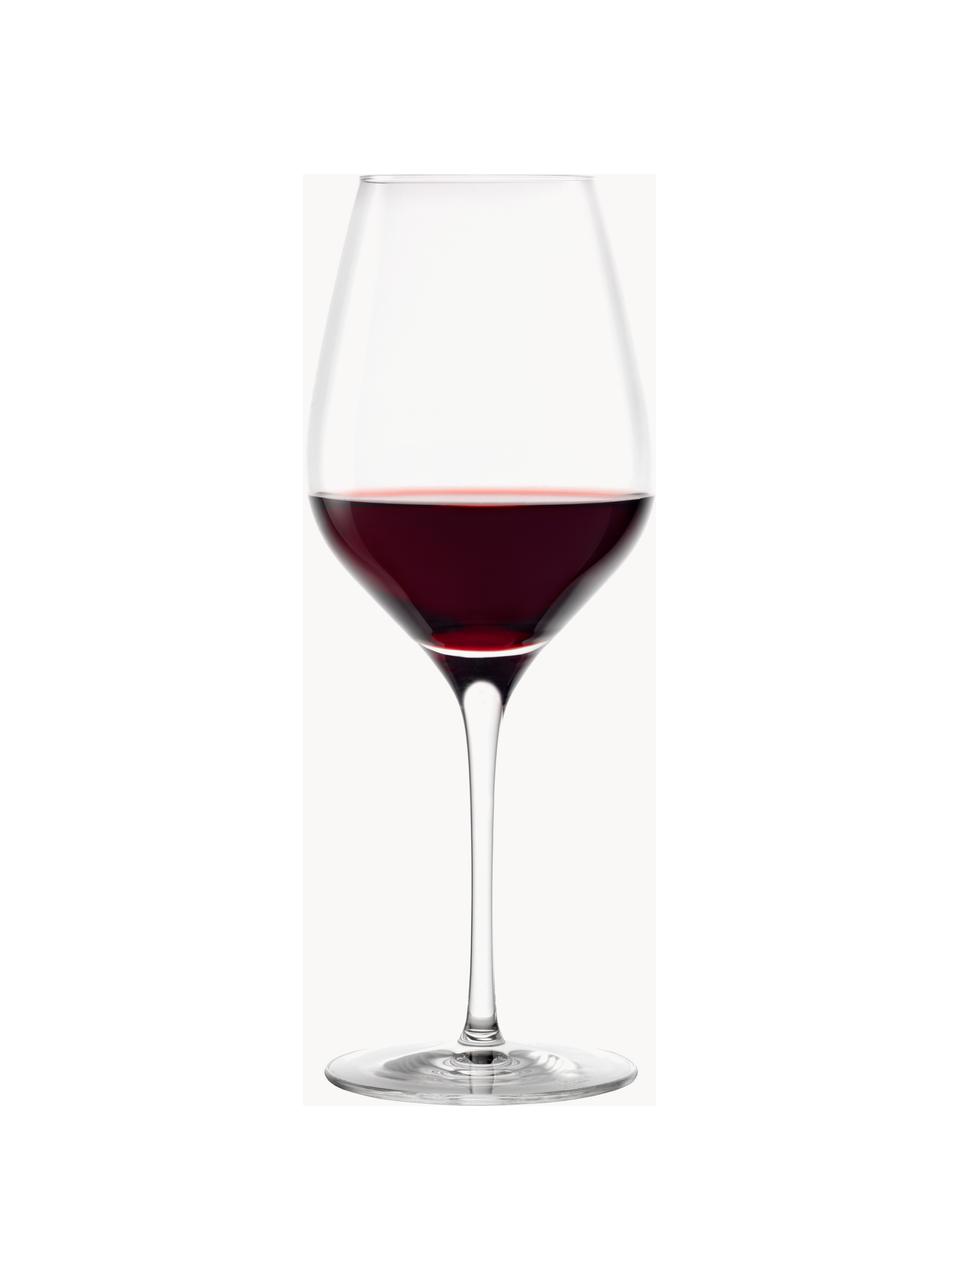 Kieliszek do wina ze szkła kryształowego Exquisit, 6 szt., Szkło kryształowe, Transparentny, Ø 7 x W 25 cm, 645 ml